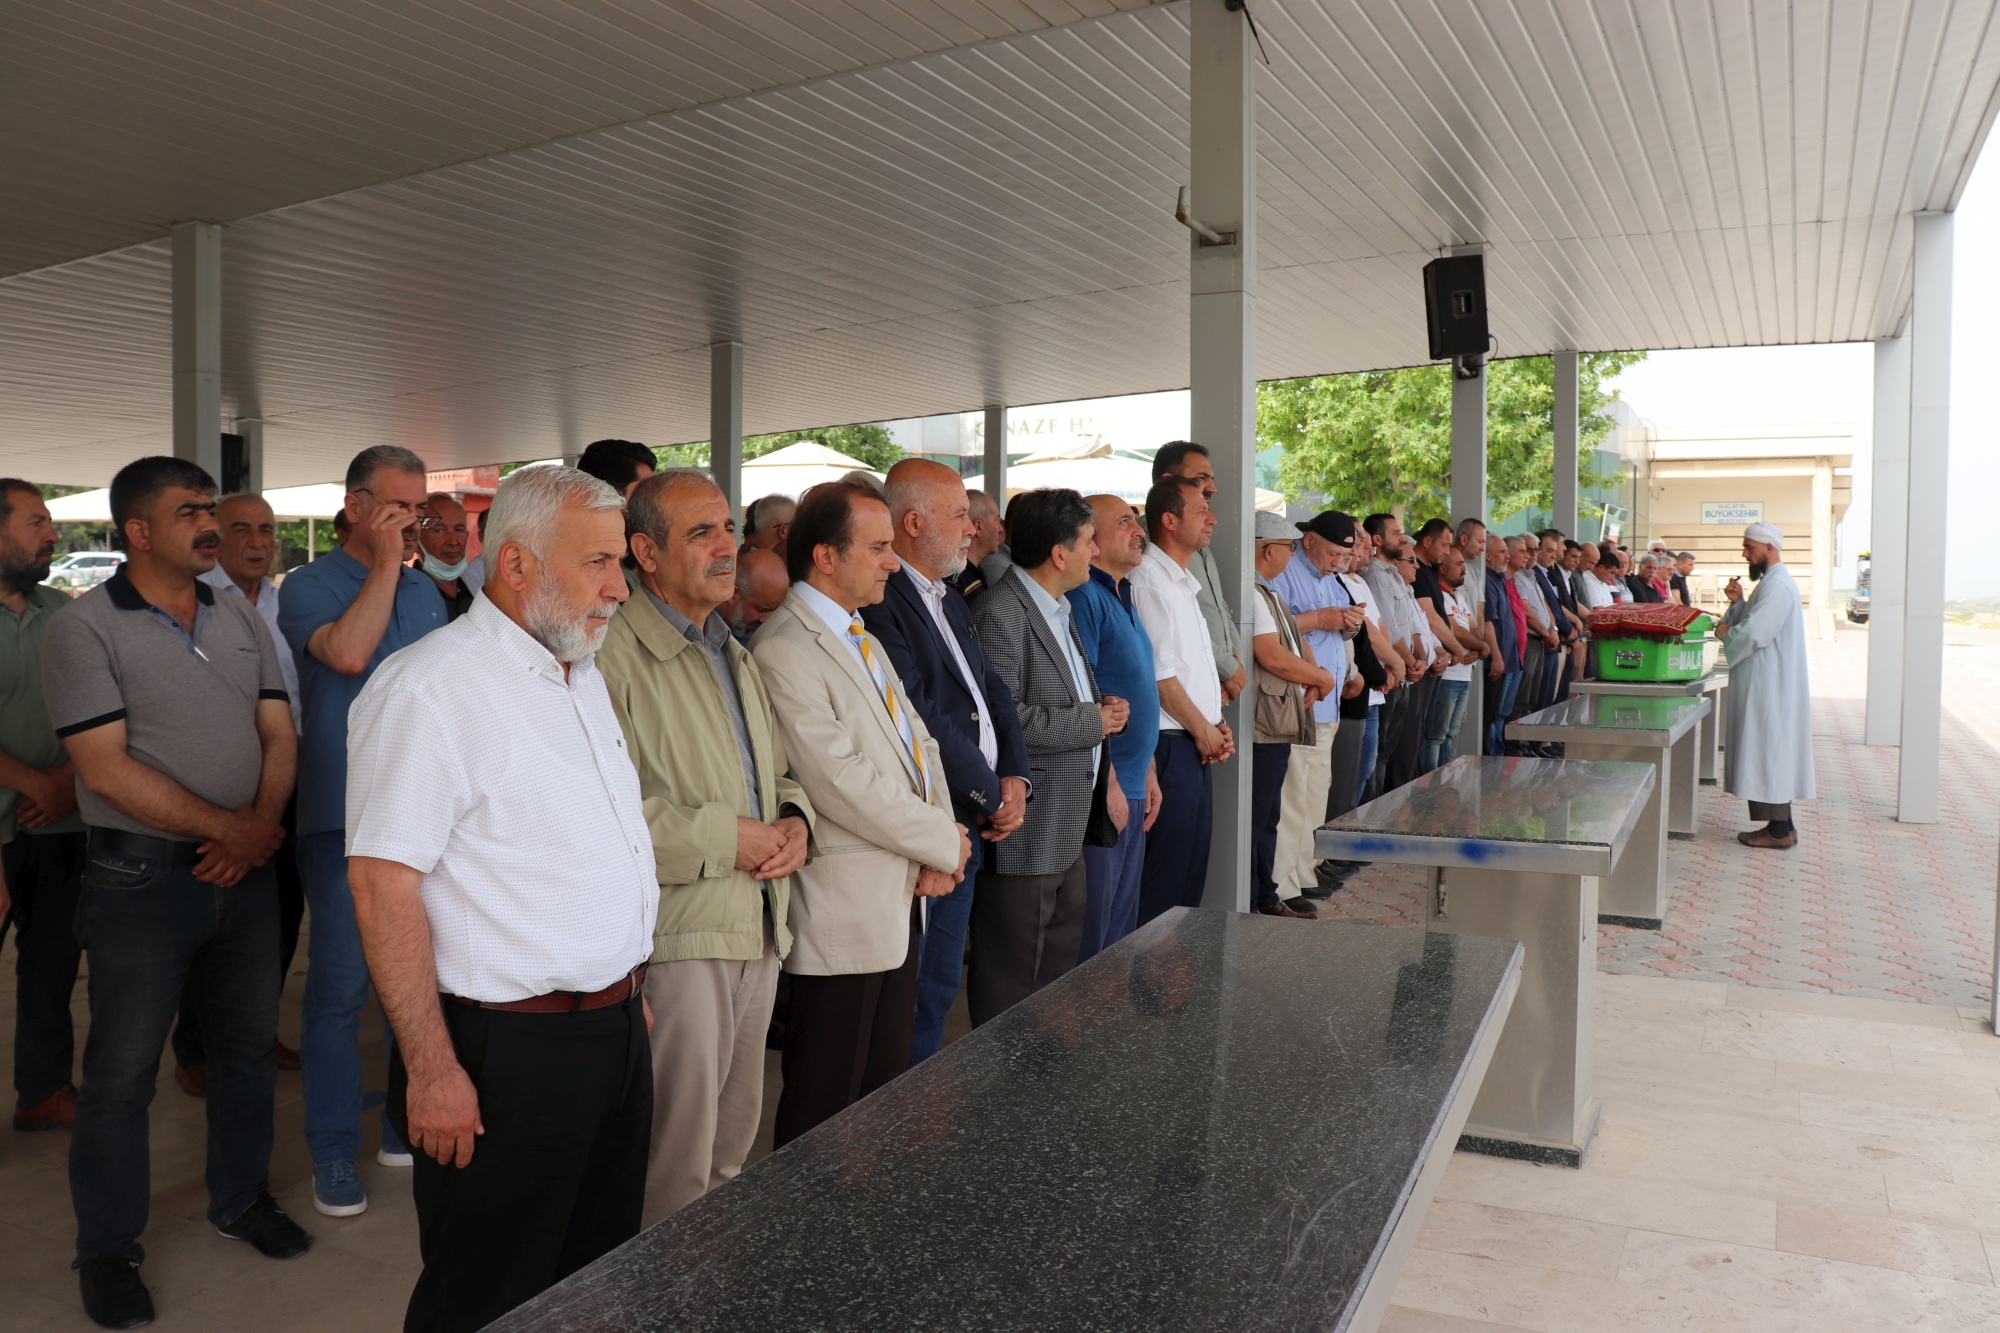 Malatyaspor'un eski başkan ve kalecilerinden, Malatya Eğitim Vakfı'nın (MEV) ilk genel sekreteri, iş adamı Vedat Erdoğan son yolculuğuna uğurlandı.